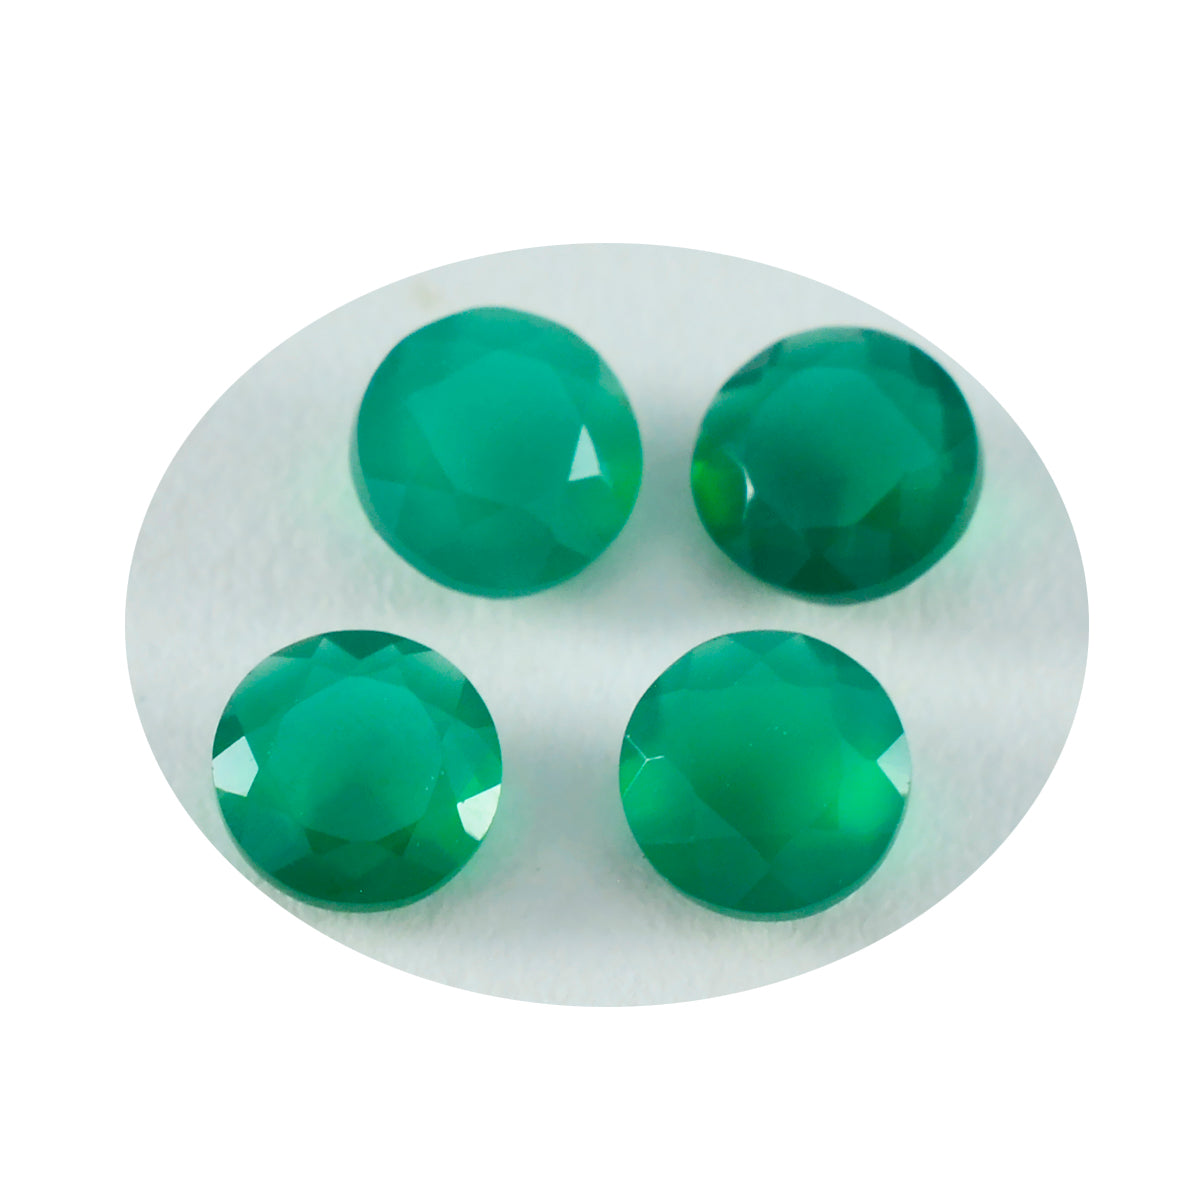 Riyogems 1 Stück natürlicher grüner Jaspis, facettiert, 7 x 7 mm, runde Form, hübsche, hochwertige lose Edelsteine